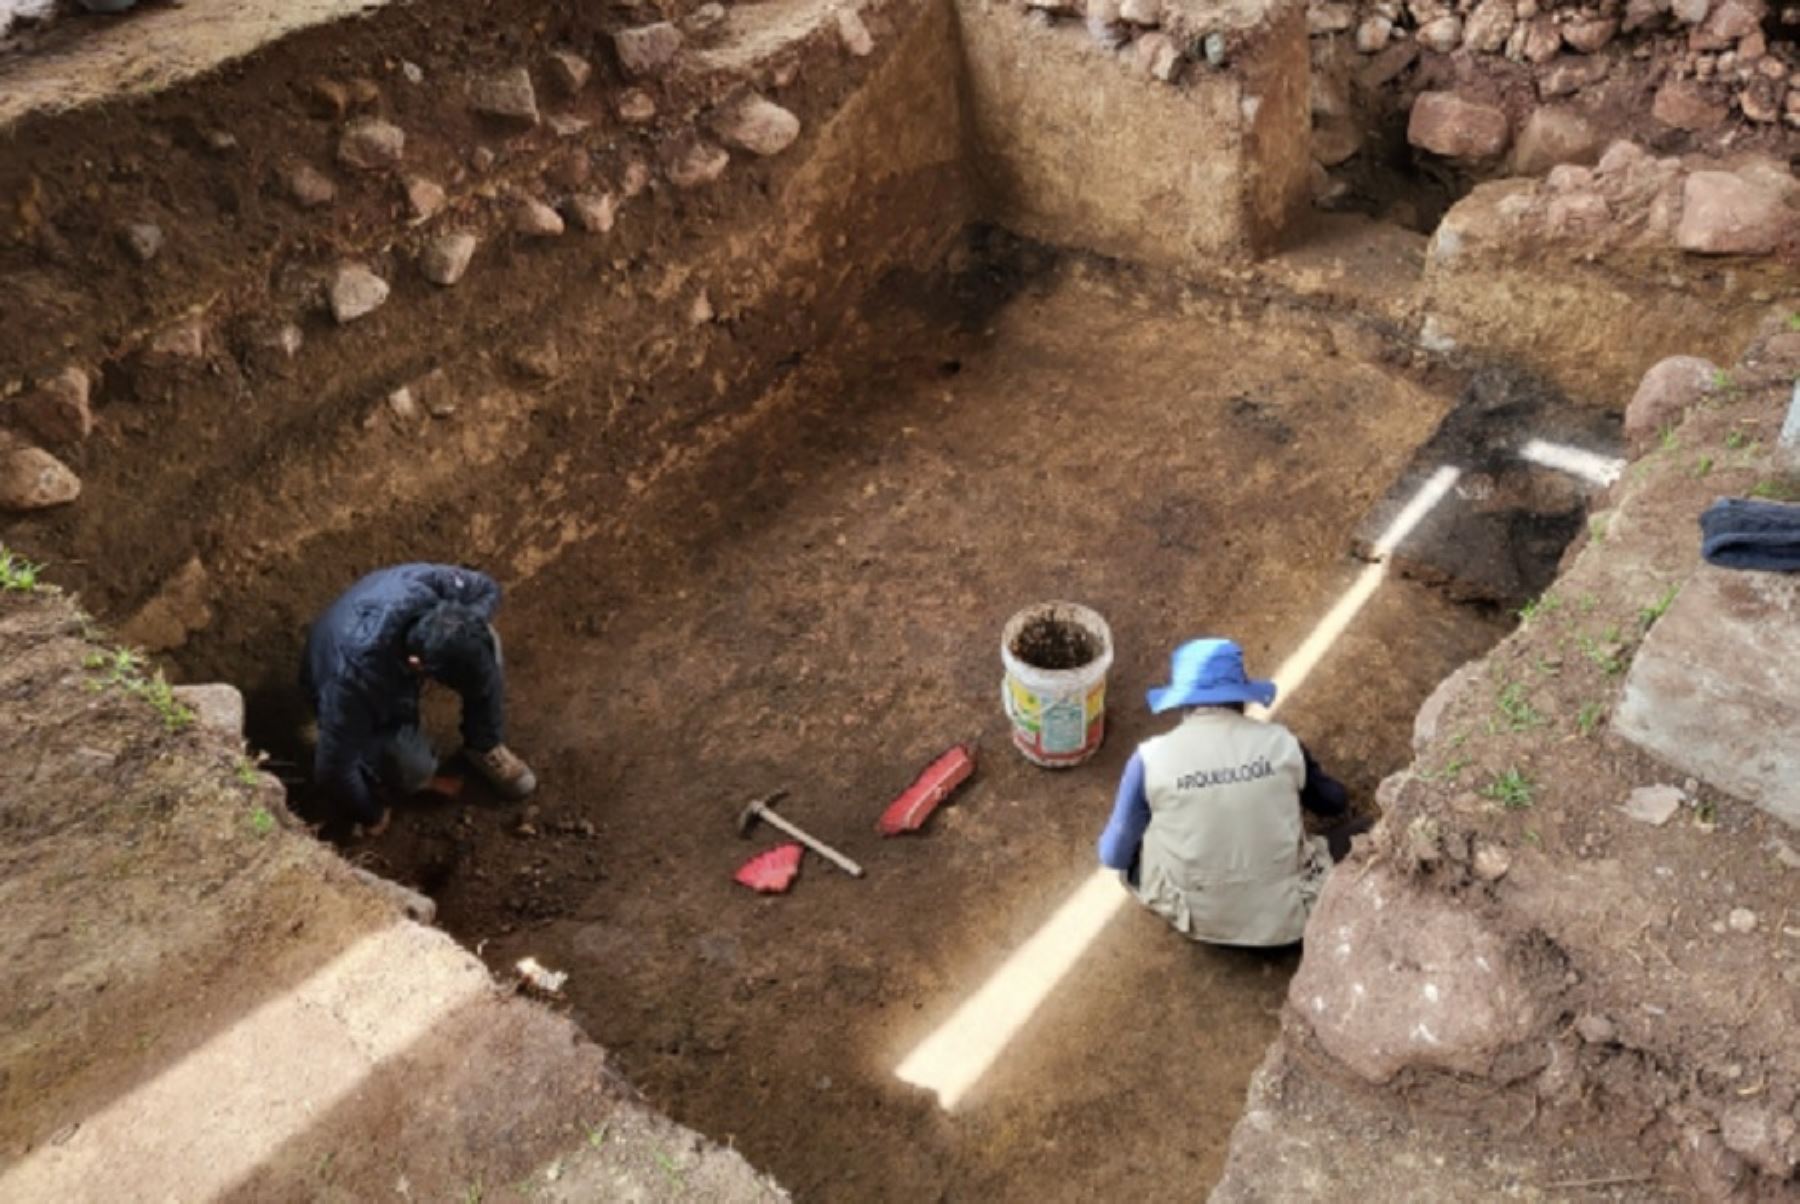 Arqueólogos peruanos descubrieron un recinto enlucido de color blanco, perteneciente al periodo Formativo, en la parte alta del templo ceremonial de Rurupa, ubicado en el distrito de Ancohuallo, provincia de Chincheros, departamento de Apurímac.